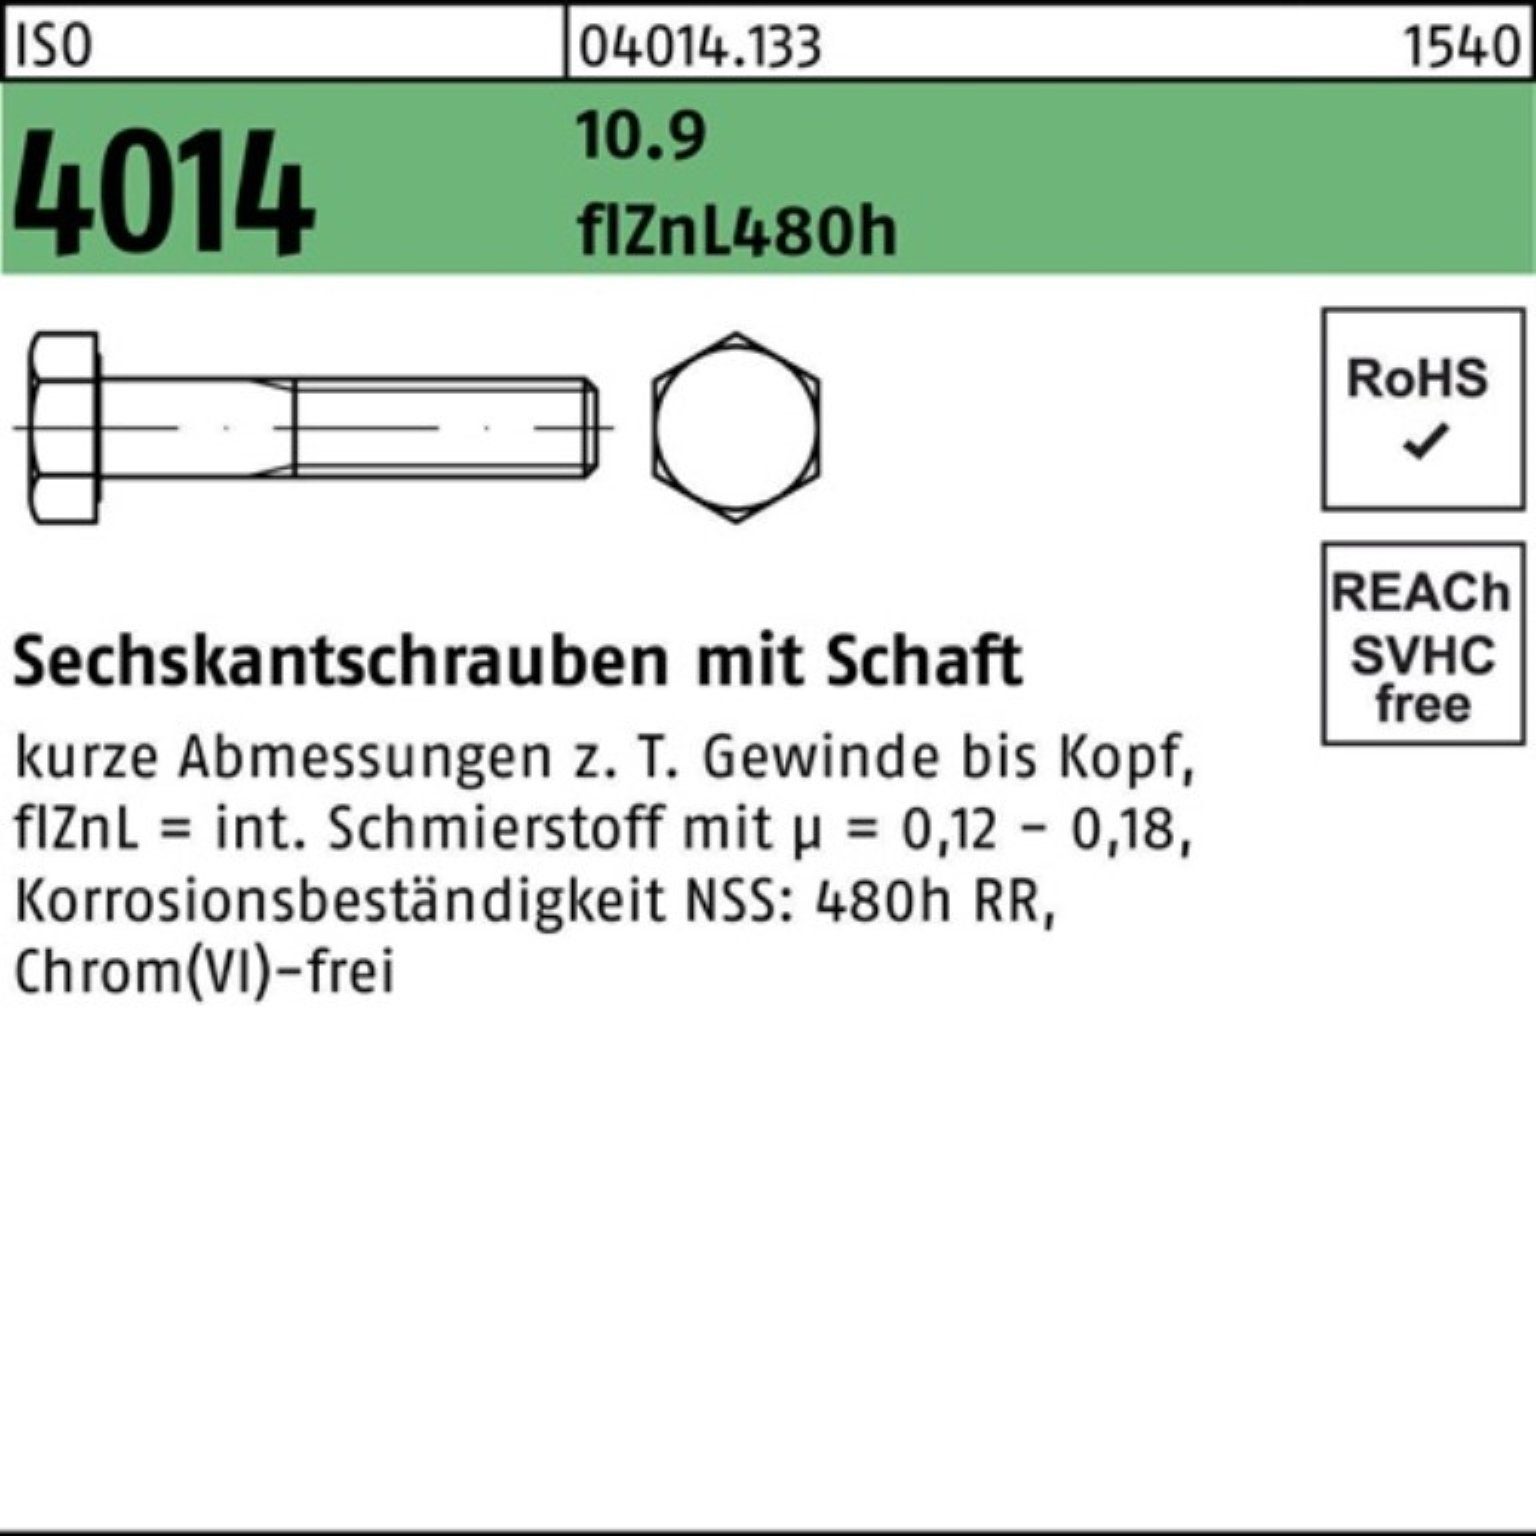 55 4014 Schaft zinklamellen Bufab Pack Sechskantschraube M14x Sechskantschraube ISO 10.9 100er